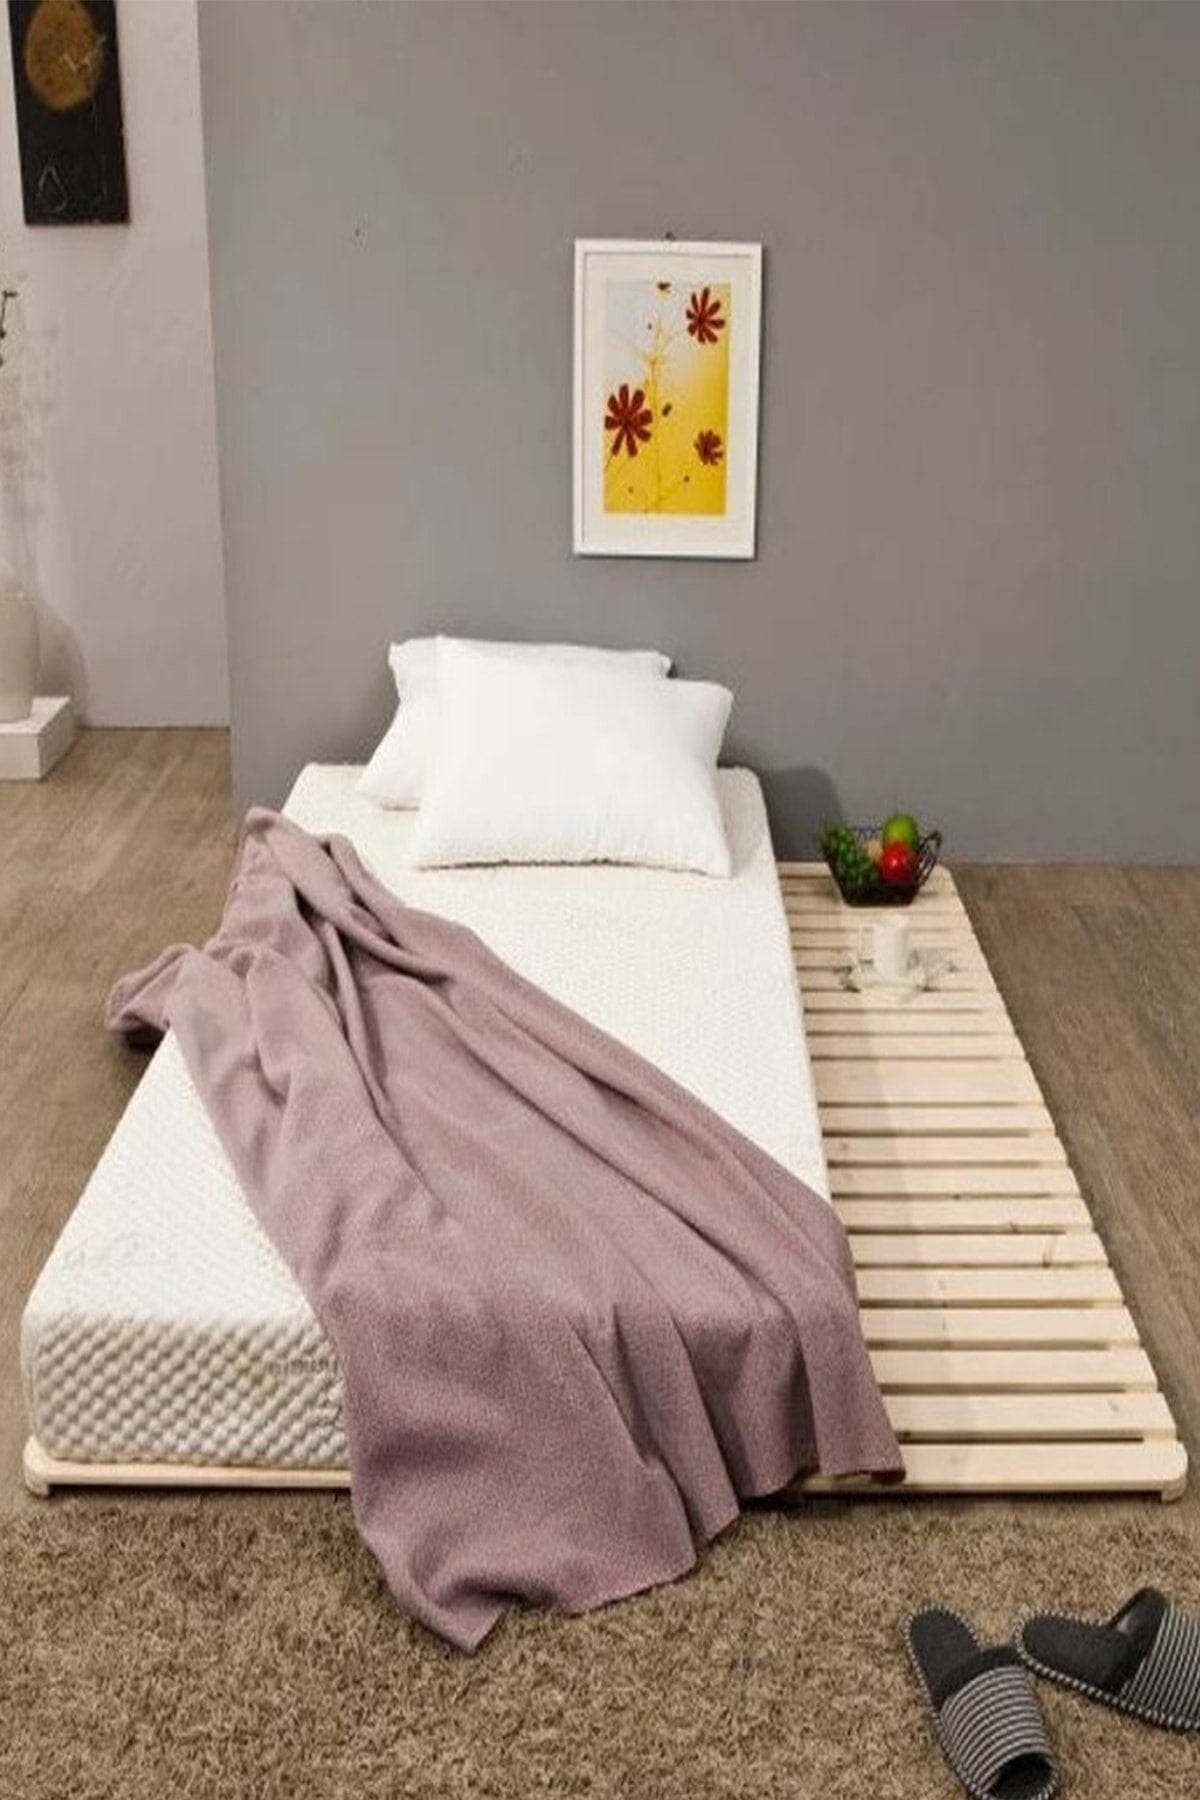 Loolpi Home Japon Yer Yatağı Japon Model Doğal Ahşap Karyola Yer Yatağı Tek Ve Çift Kişilik Tüm Ölçülerde